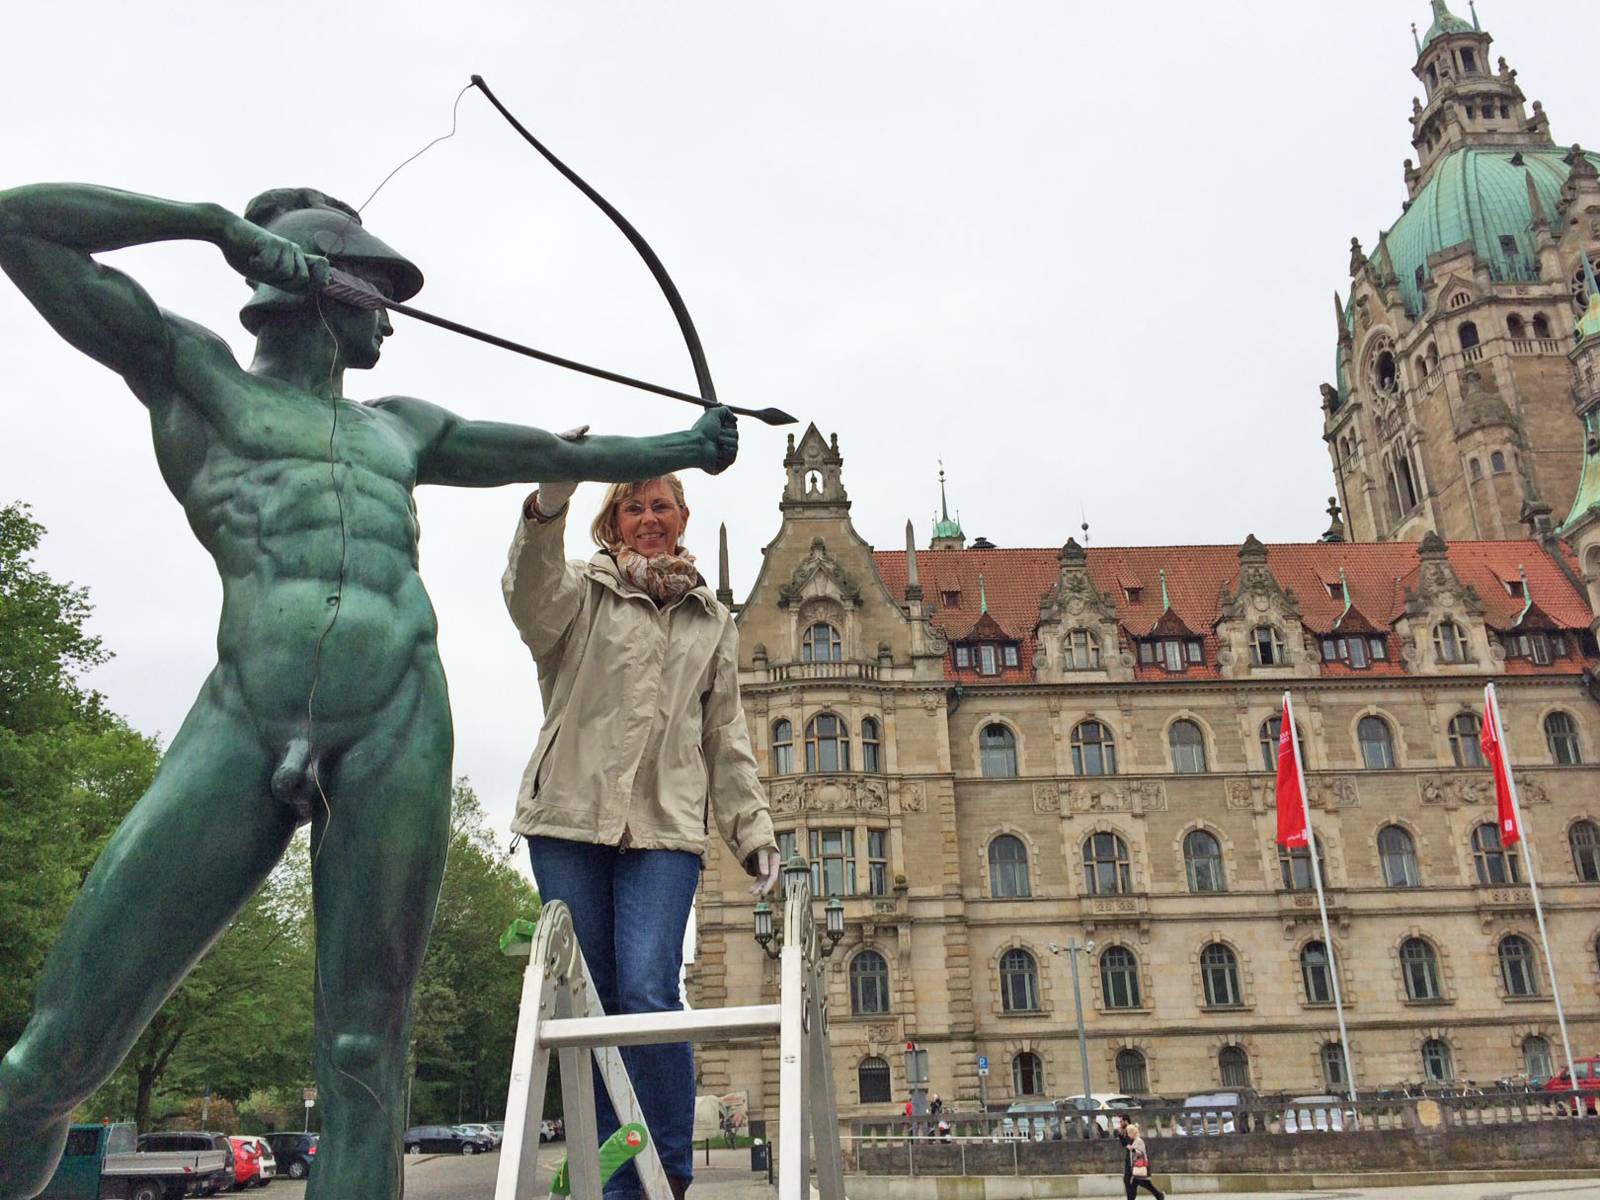 Frau auf einer Leiter, die eine Skulptur berührt. 